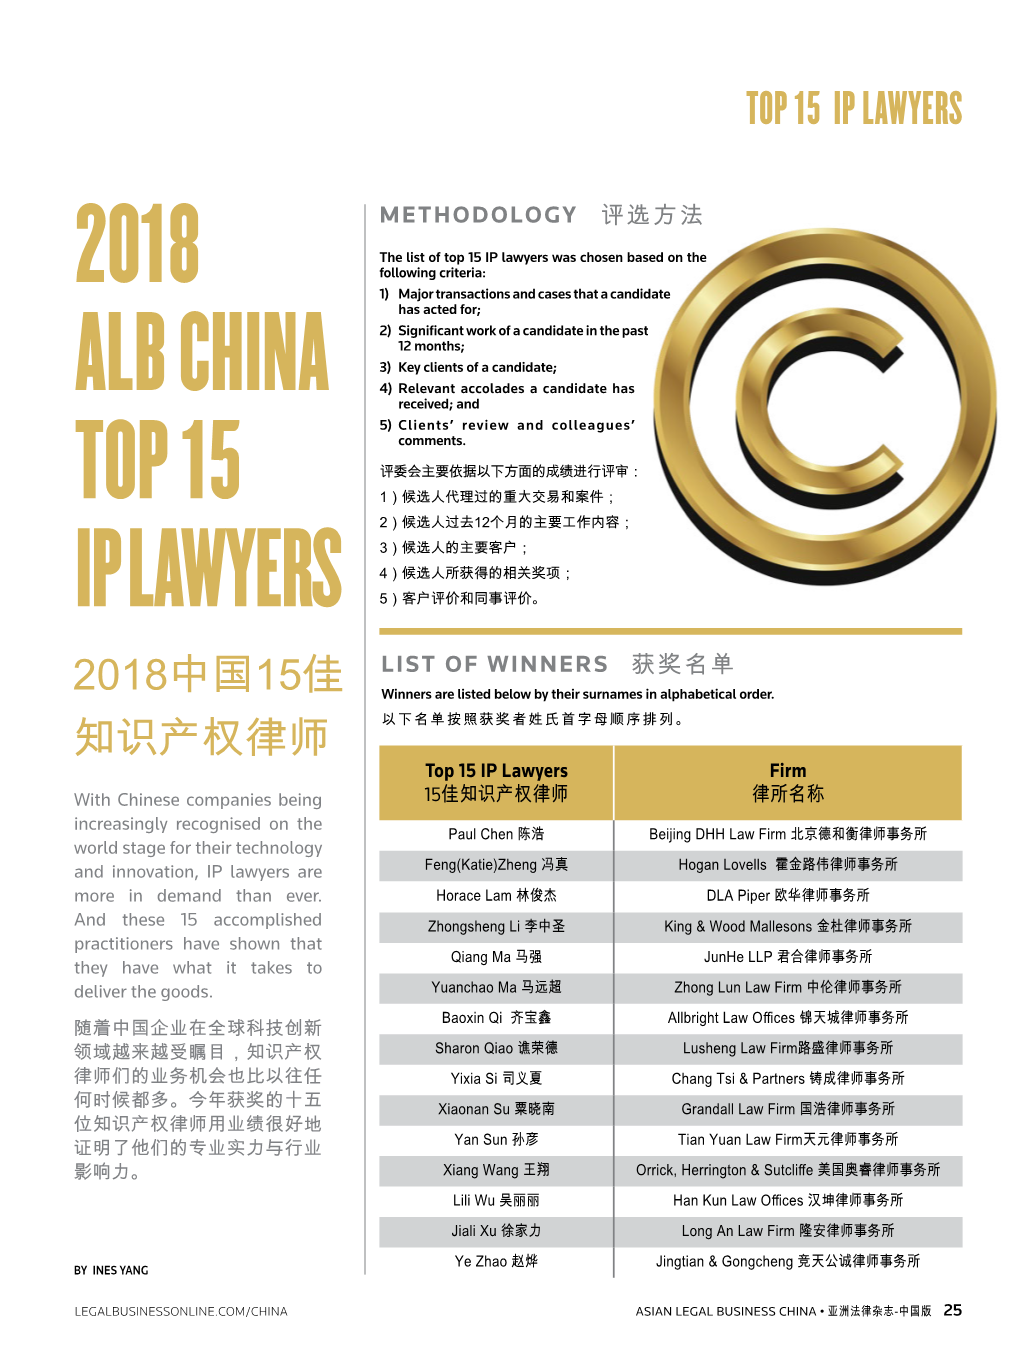 2018 ALB China Top 15 IP Lawyers – 电话/Tel: +86 134 8886 6483 Zhao Ye, Partner of Jingtian & Gongcheng 邮箱/E-Mail: Zhao.Ye@Jingtian.Com